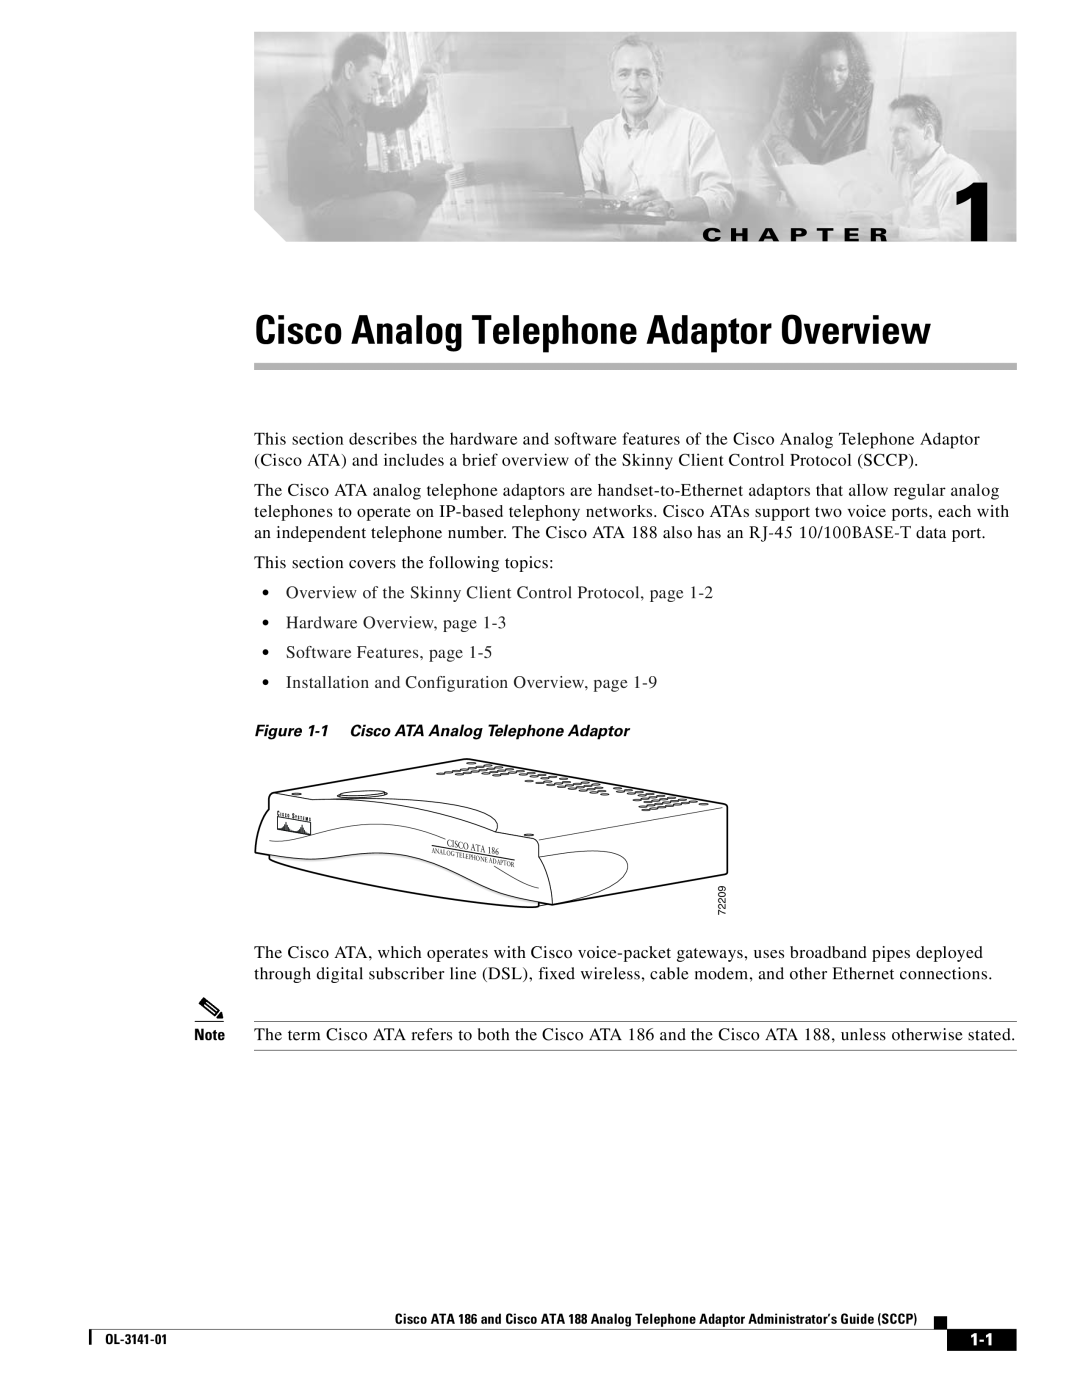 Cisco Systems ATA 188, ATA 186 manual Cisco Analog Telephone Adaptor Overview, C H A P T E R 